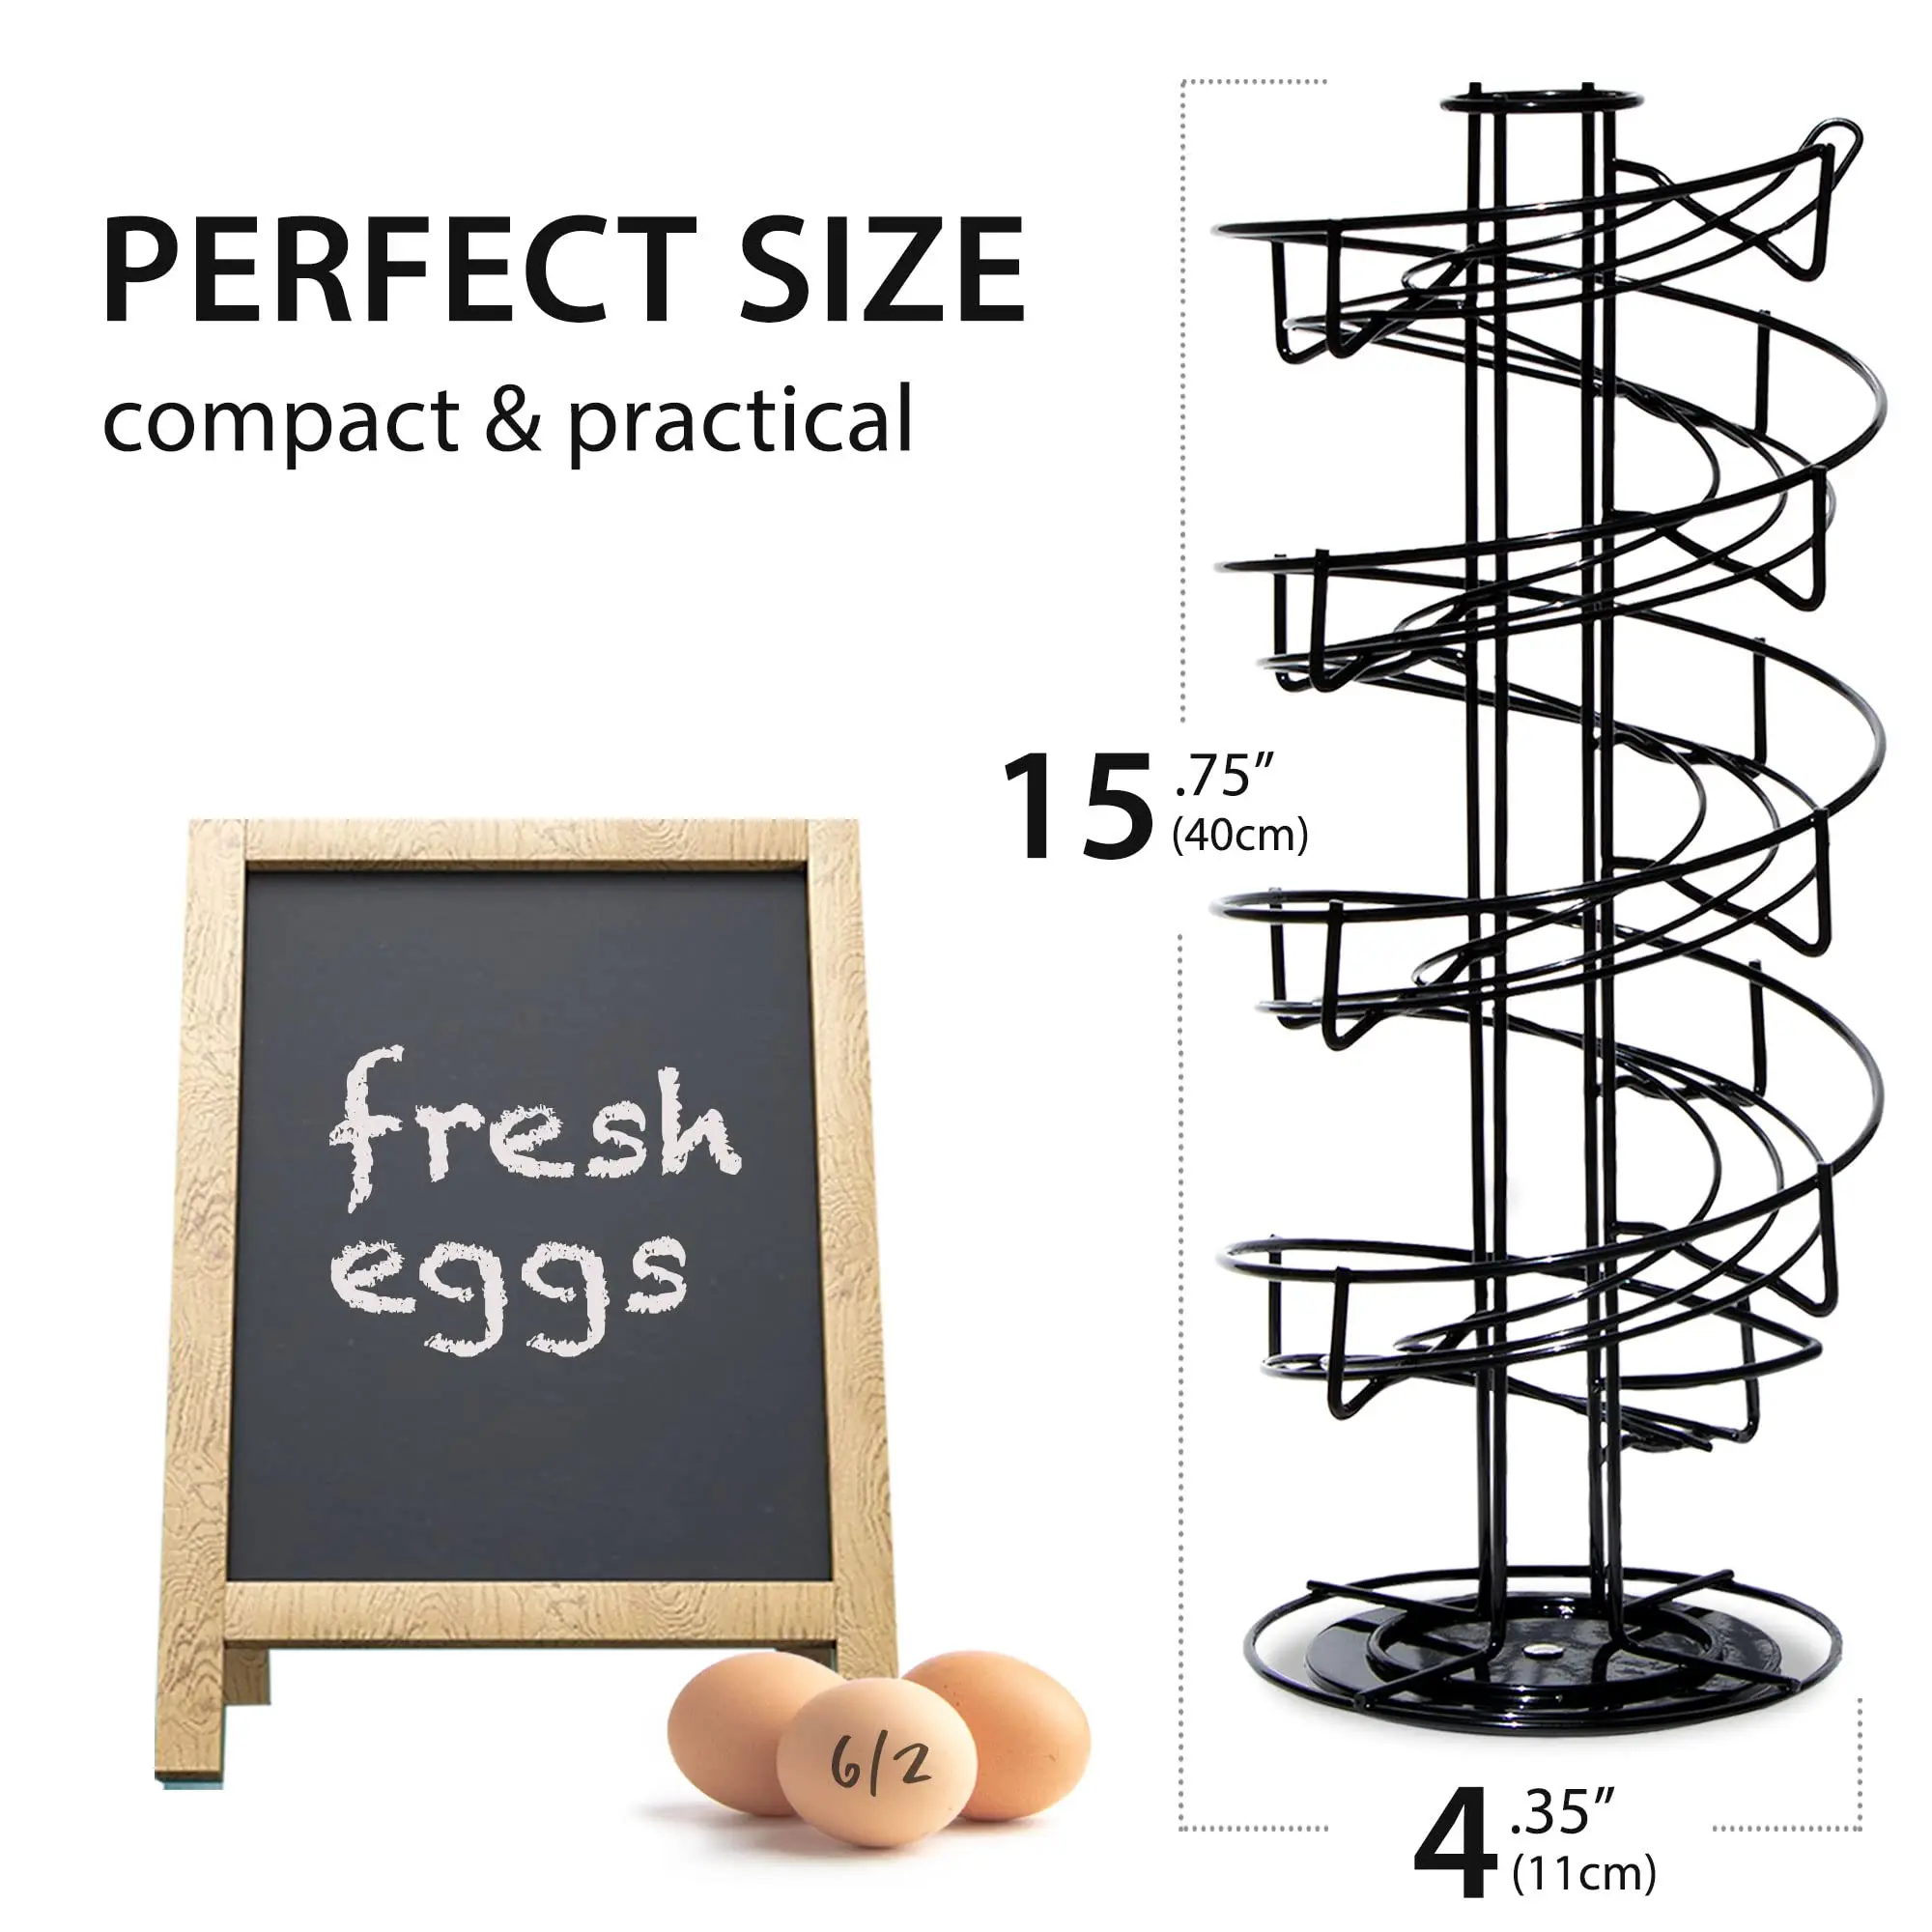 Egg Holder Countertop  Egg Dispenser  3 Dozen Non Slip Base Egg Rack